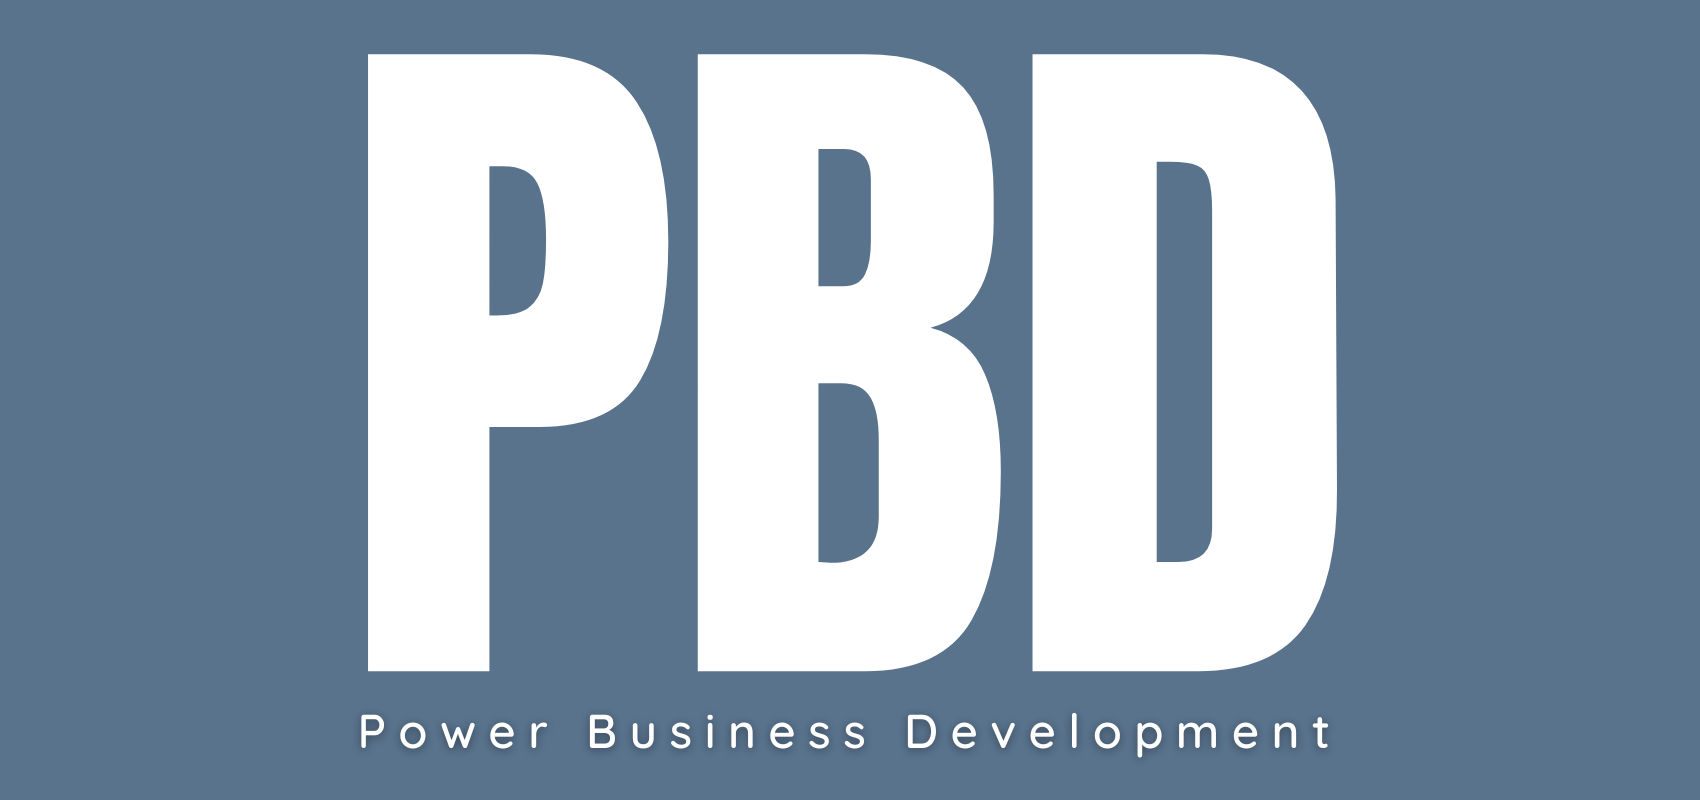 Power Business Development